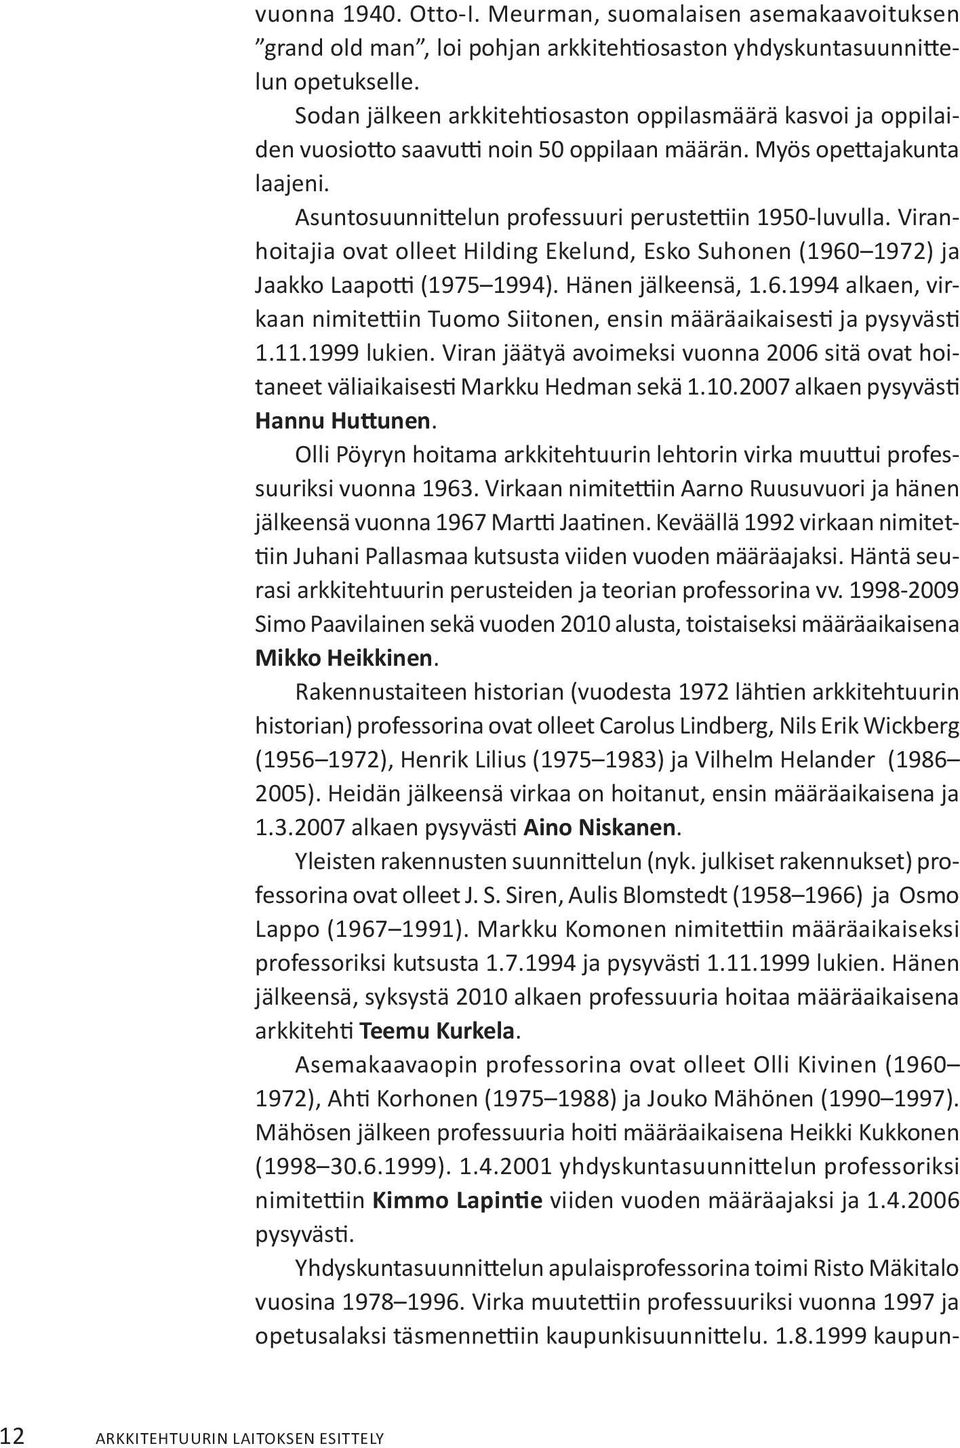 Viranhoitajia ovat olleet Hilding Ekelund, Esko Suhonen (1960 1972) ja Jaakko Laapotti (1975 1994). Hänen jälkeensä, 1.6.1994 alkaen, virkaan nimitettiin Tuomo Siitonen, ensin määräaikaisesti ja pysyvästi 1.